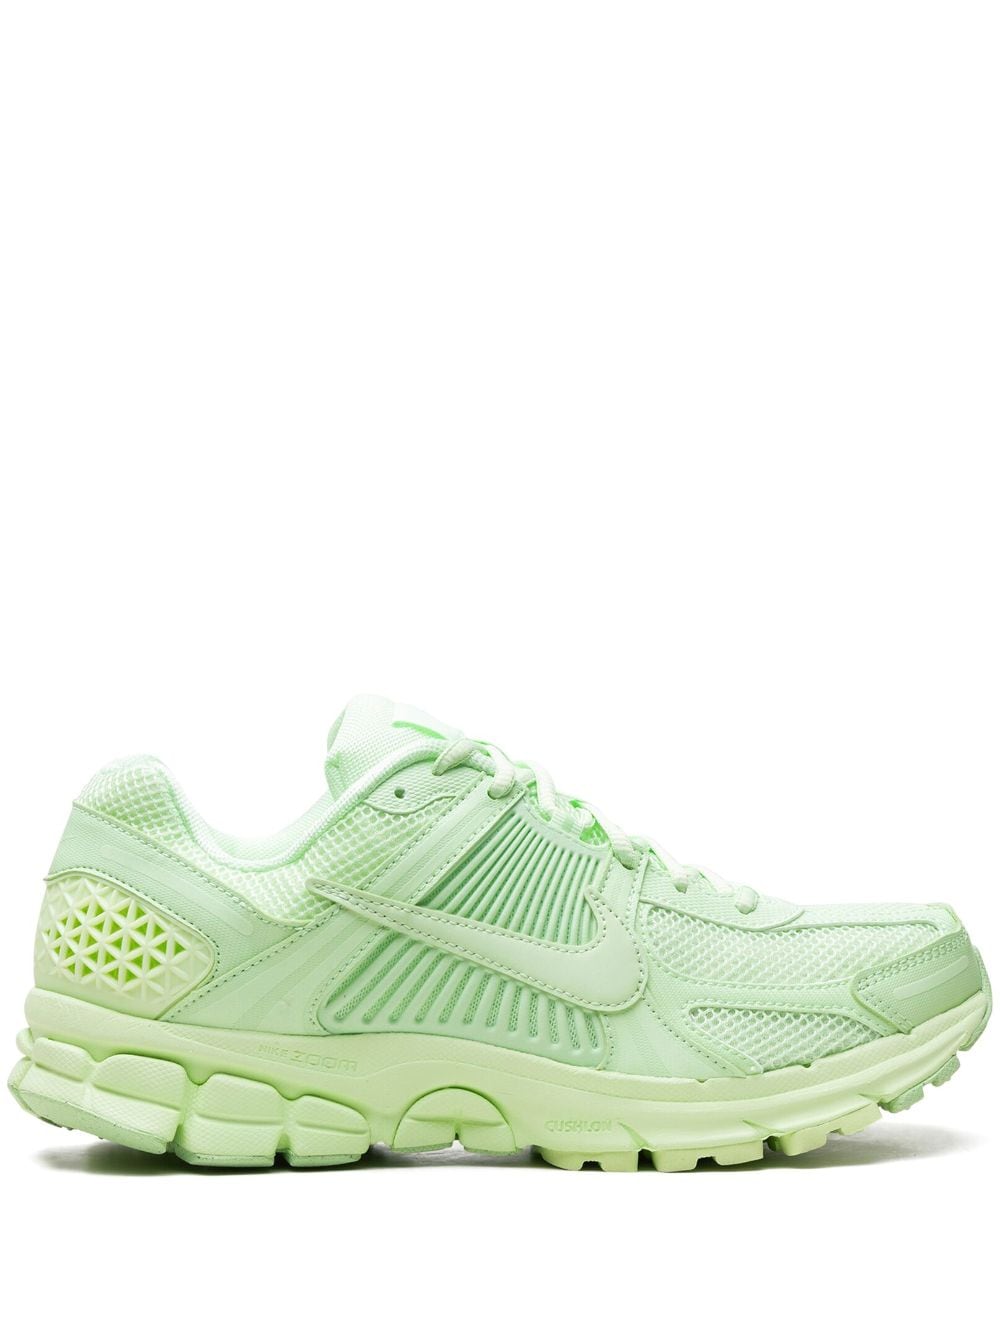 Nike Zoom Vomero 5 "pistachio" Sneakers In Multi